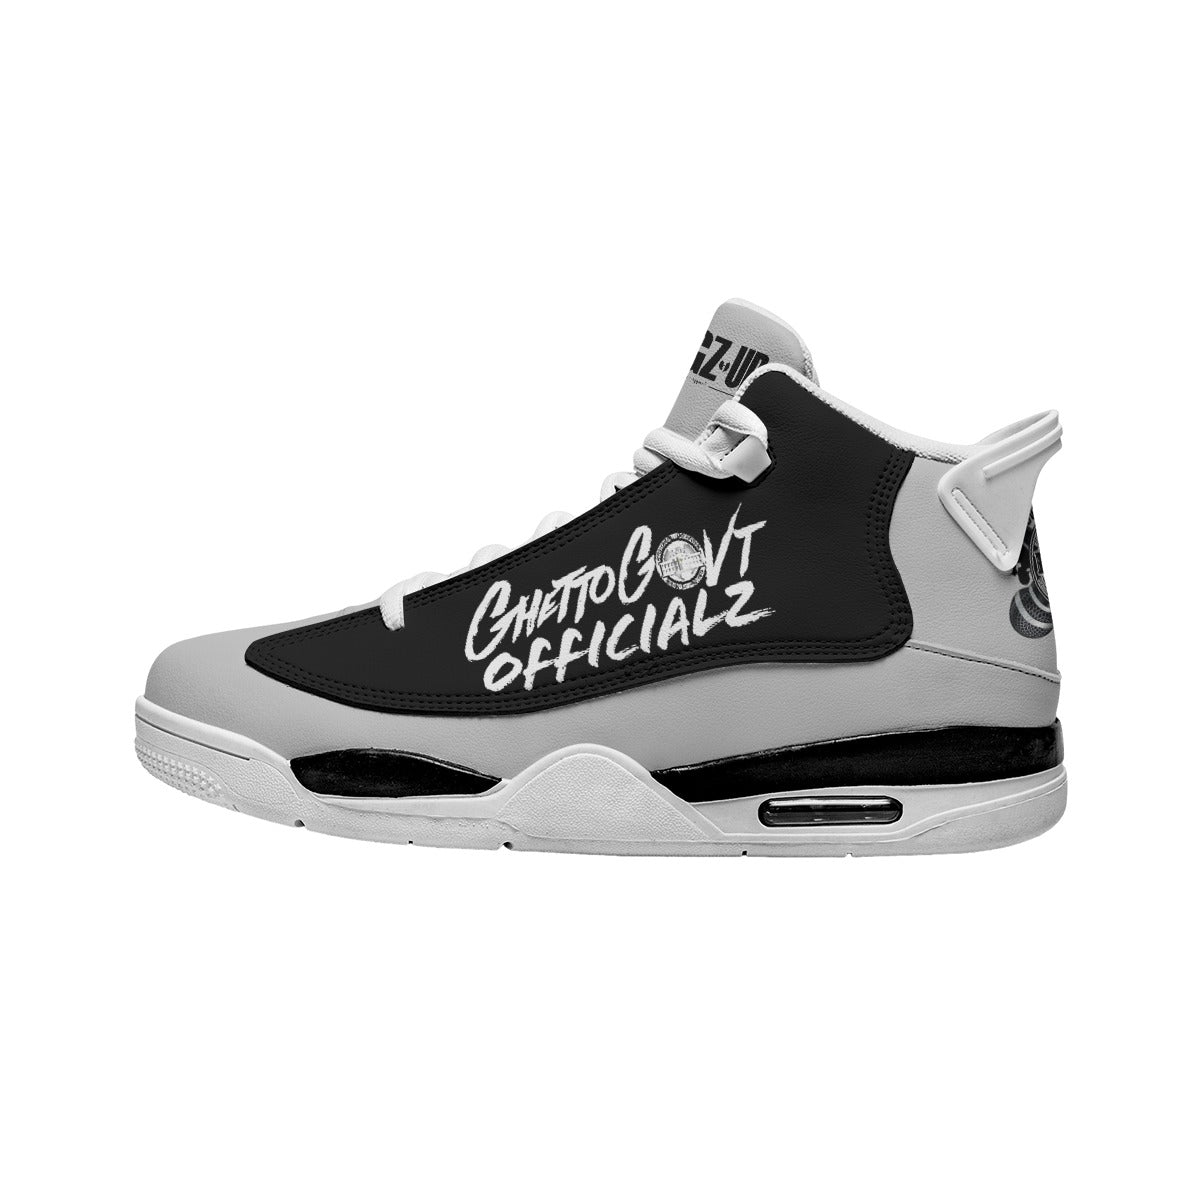 G.G.O. Ghetto Gov't Officialz Basketball Shoes